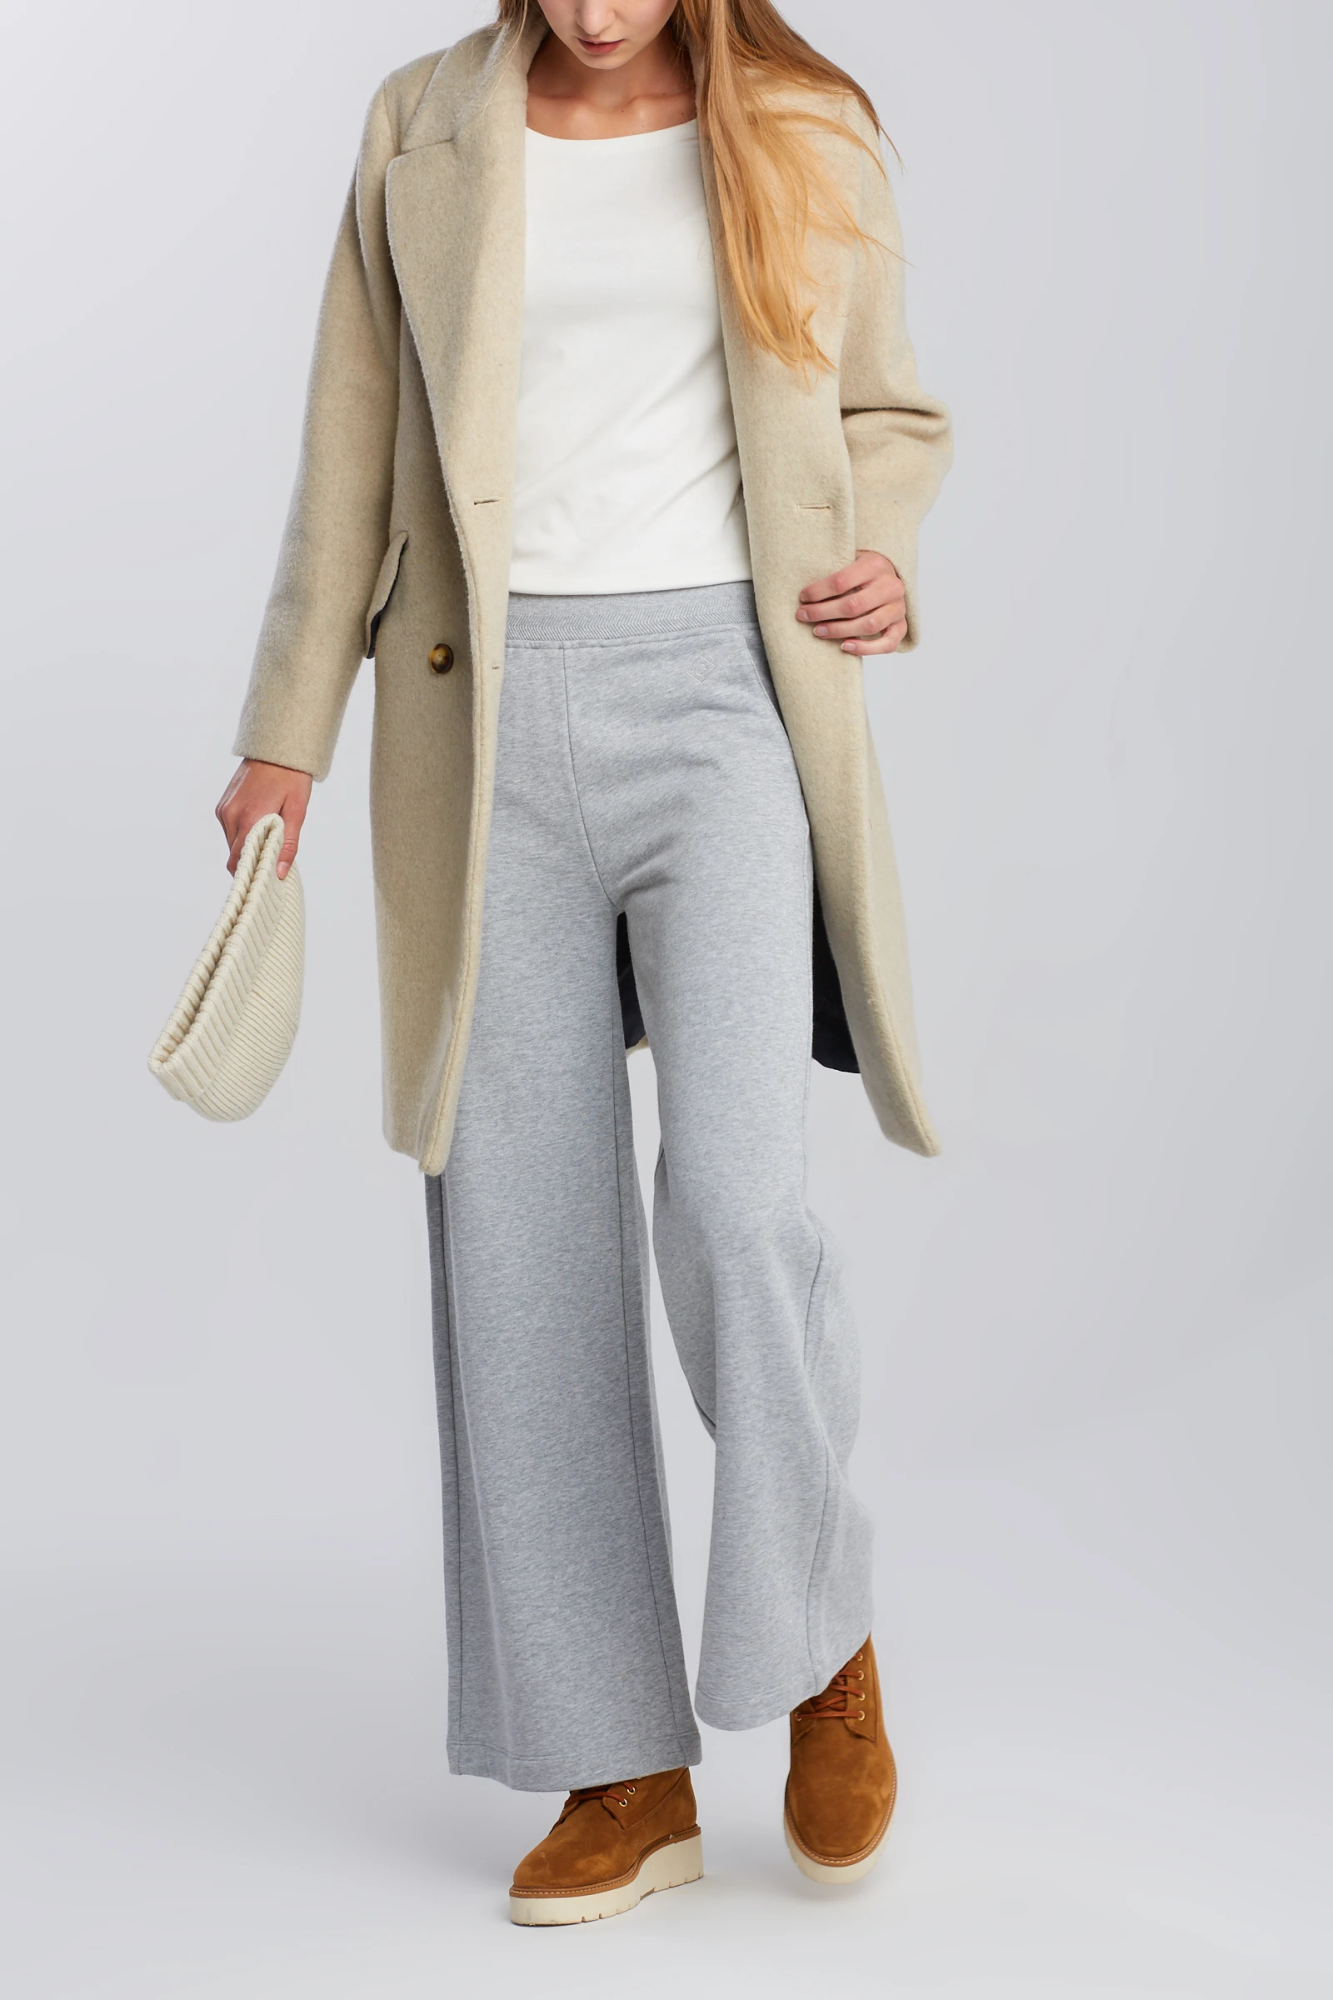 Женские брюки прямые Gant, серые, цвет серый, размер 50